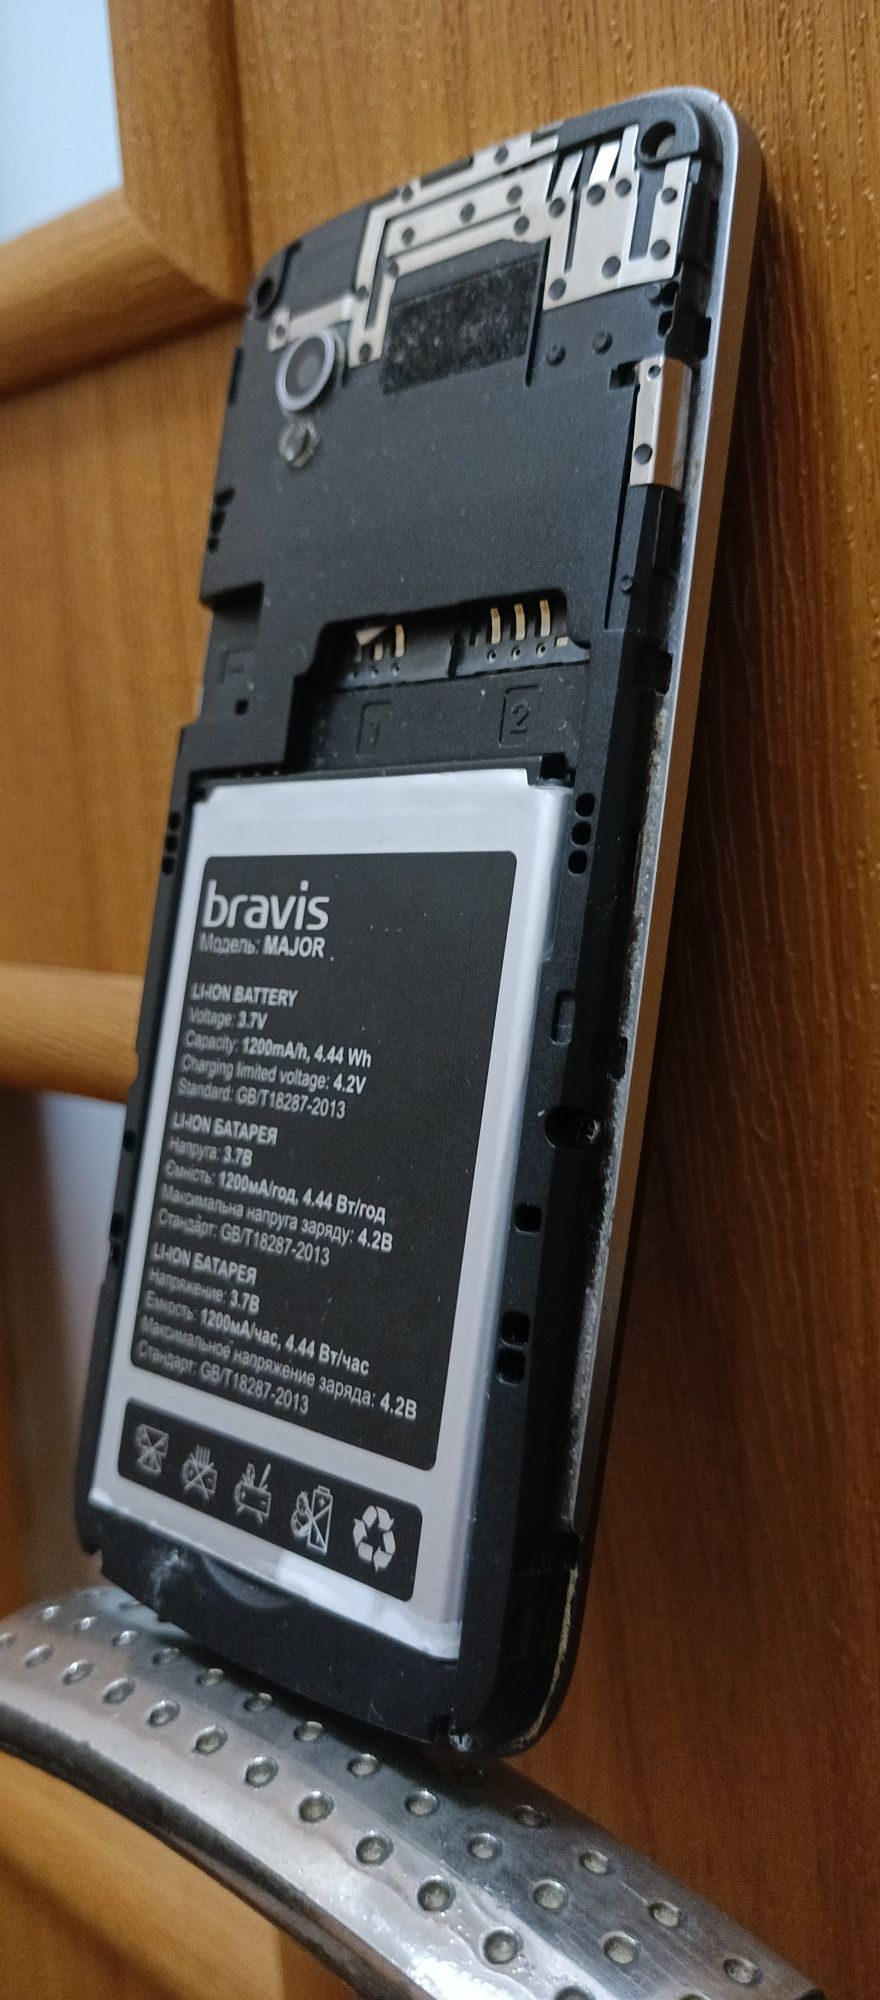 Продам телефон кнопочный Bravis